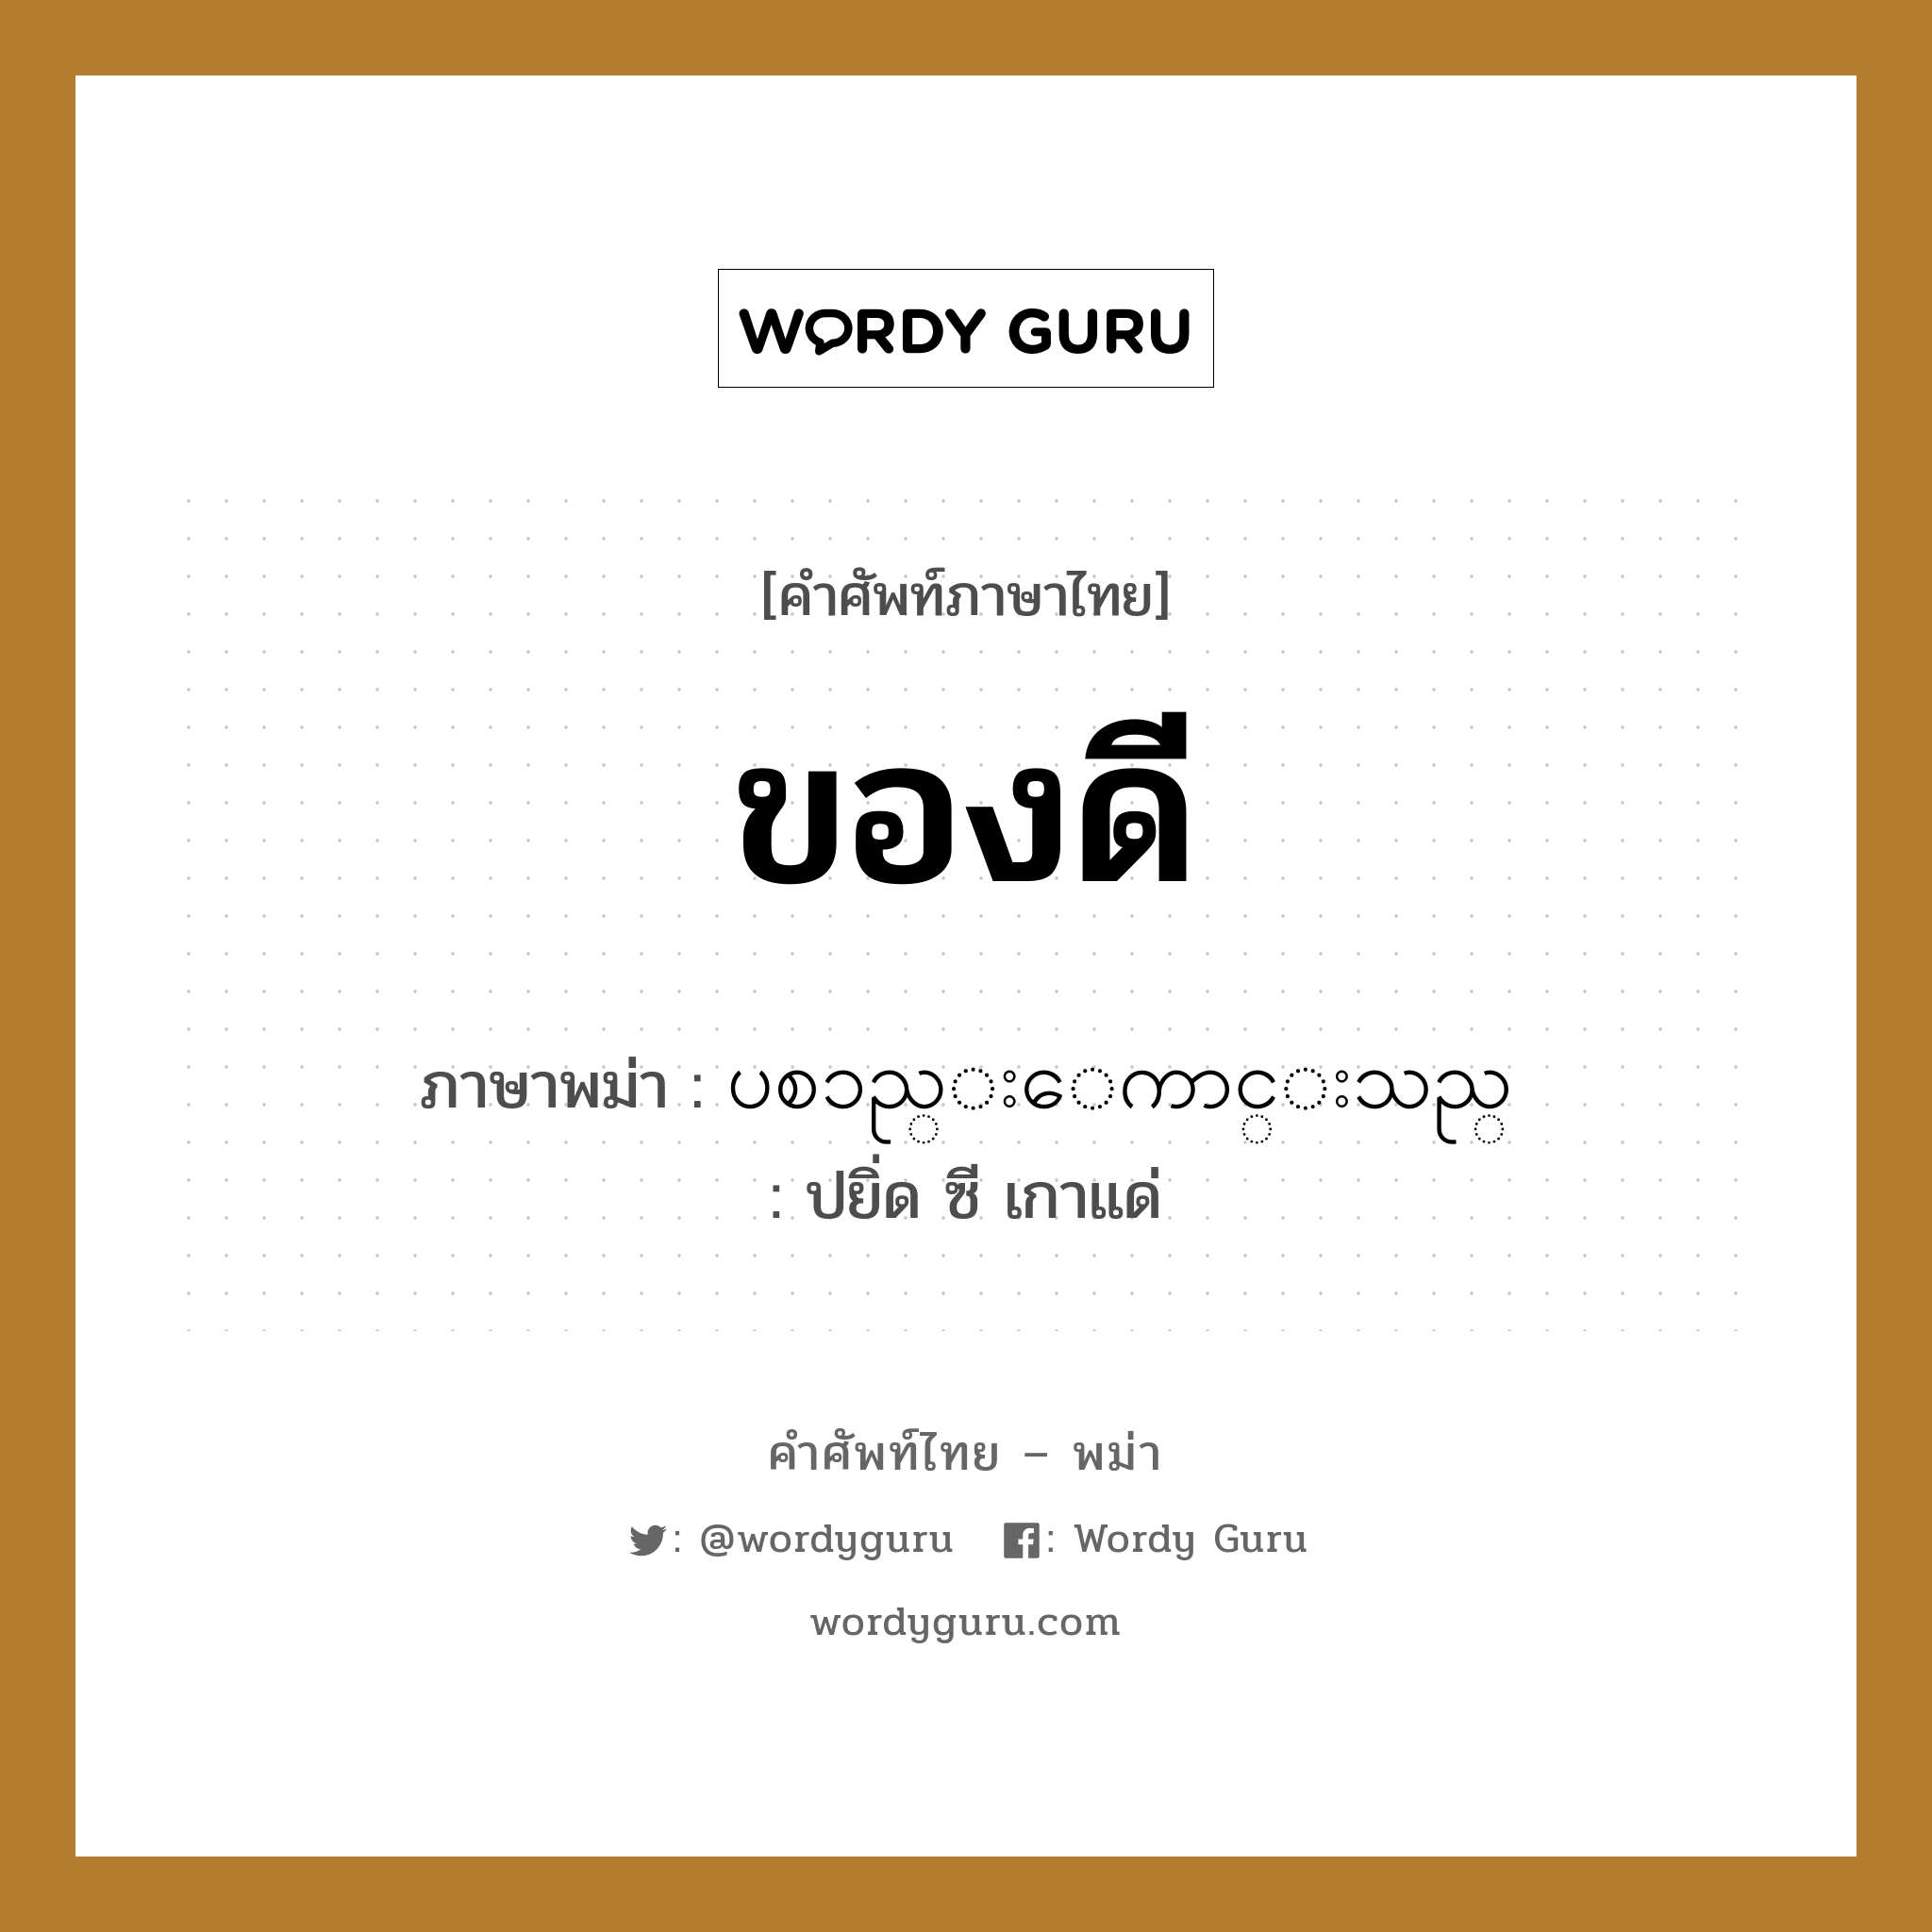 ของดี ภาษาพม่าคืออะไร, คำศัพท์ภาษาไทย - พม่า ของดี ภาษาพม่า ပစၥည္းေကာင္းသည္ หมวด บทสนทนาการซื้อขาย ปยิ่ด ซี เกาแด่ หมวด บทสนทนาการซื้อขาย